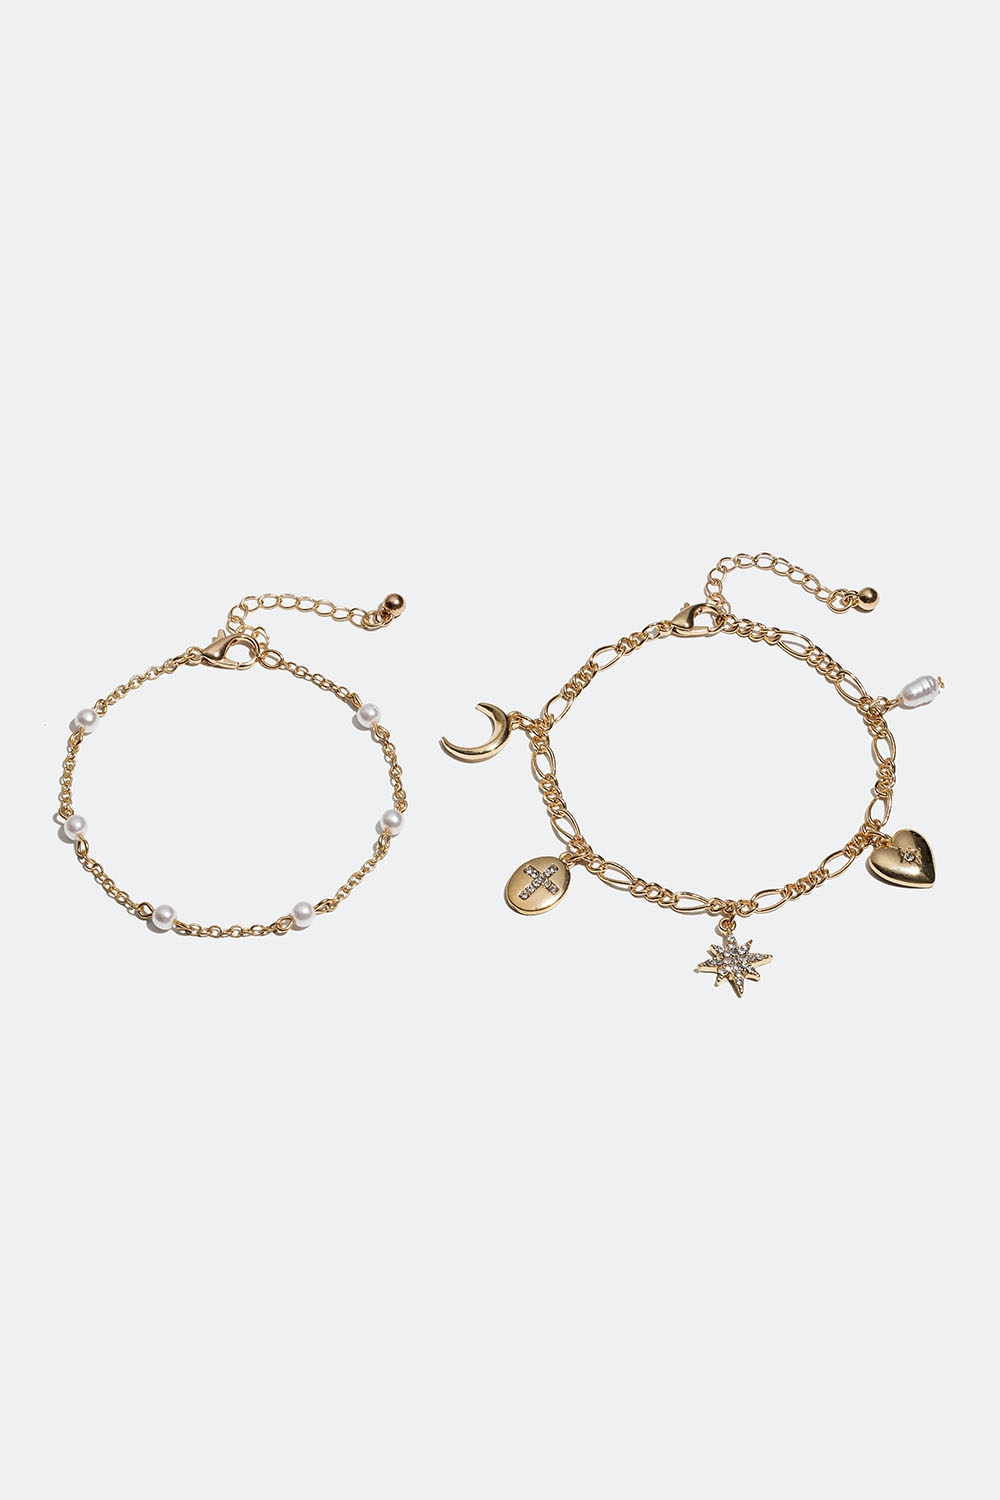 Gullfargede armbånd med perler og charms, 2-pakning i gruppen Smykker / Armbånd / Flerpakning hos Glitter (251000792002)